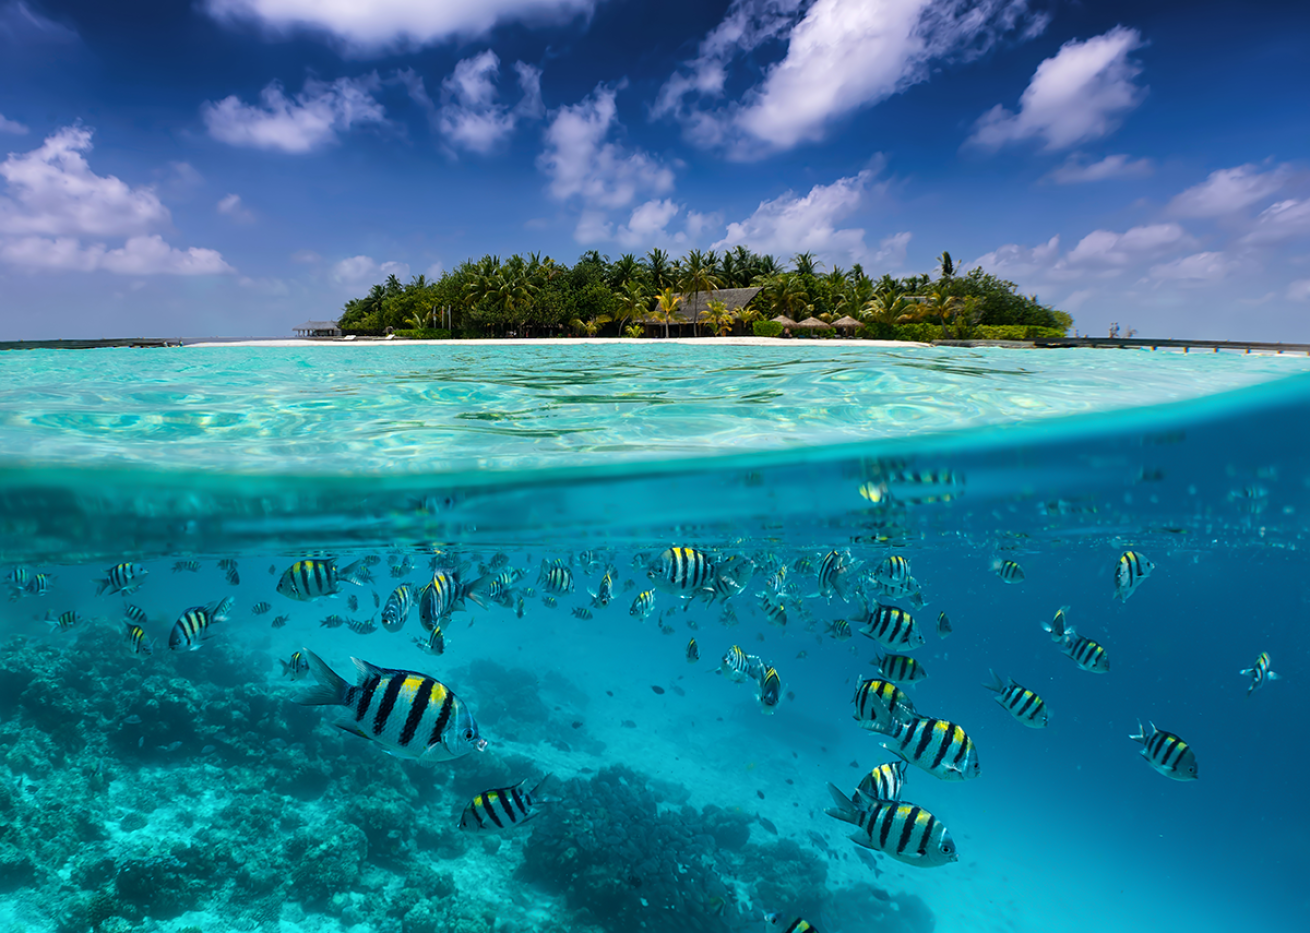 School of fish in the Maldives.